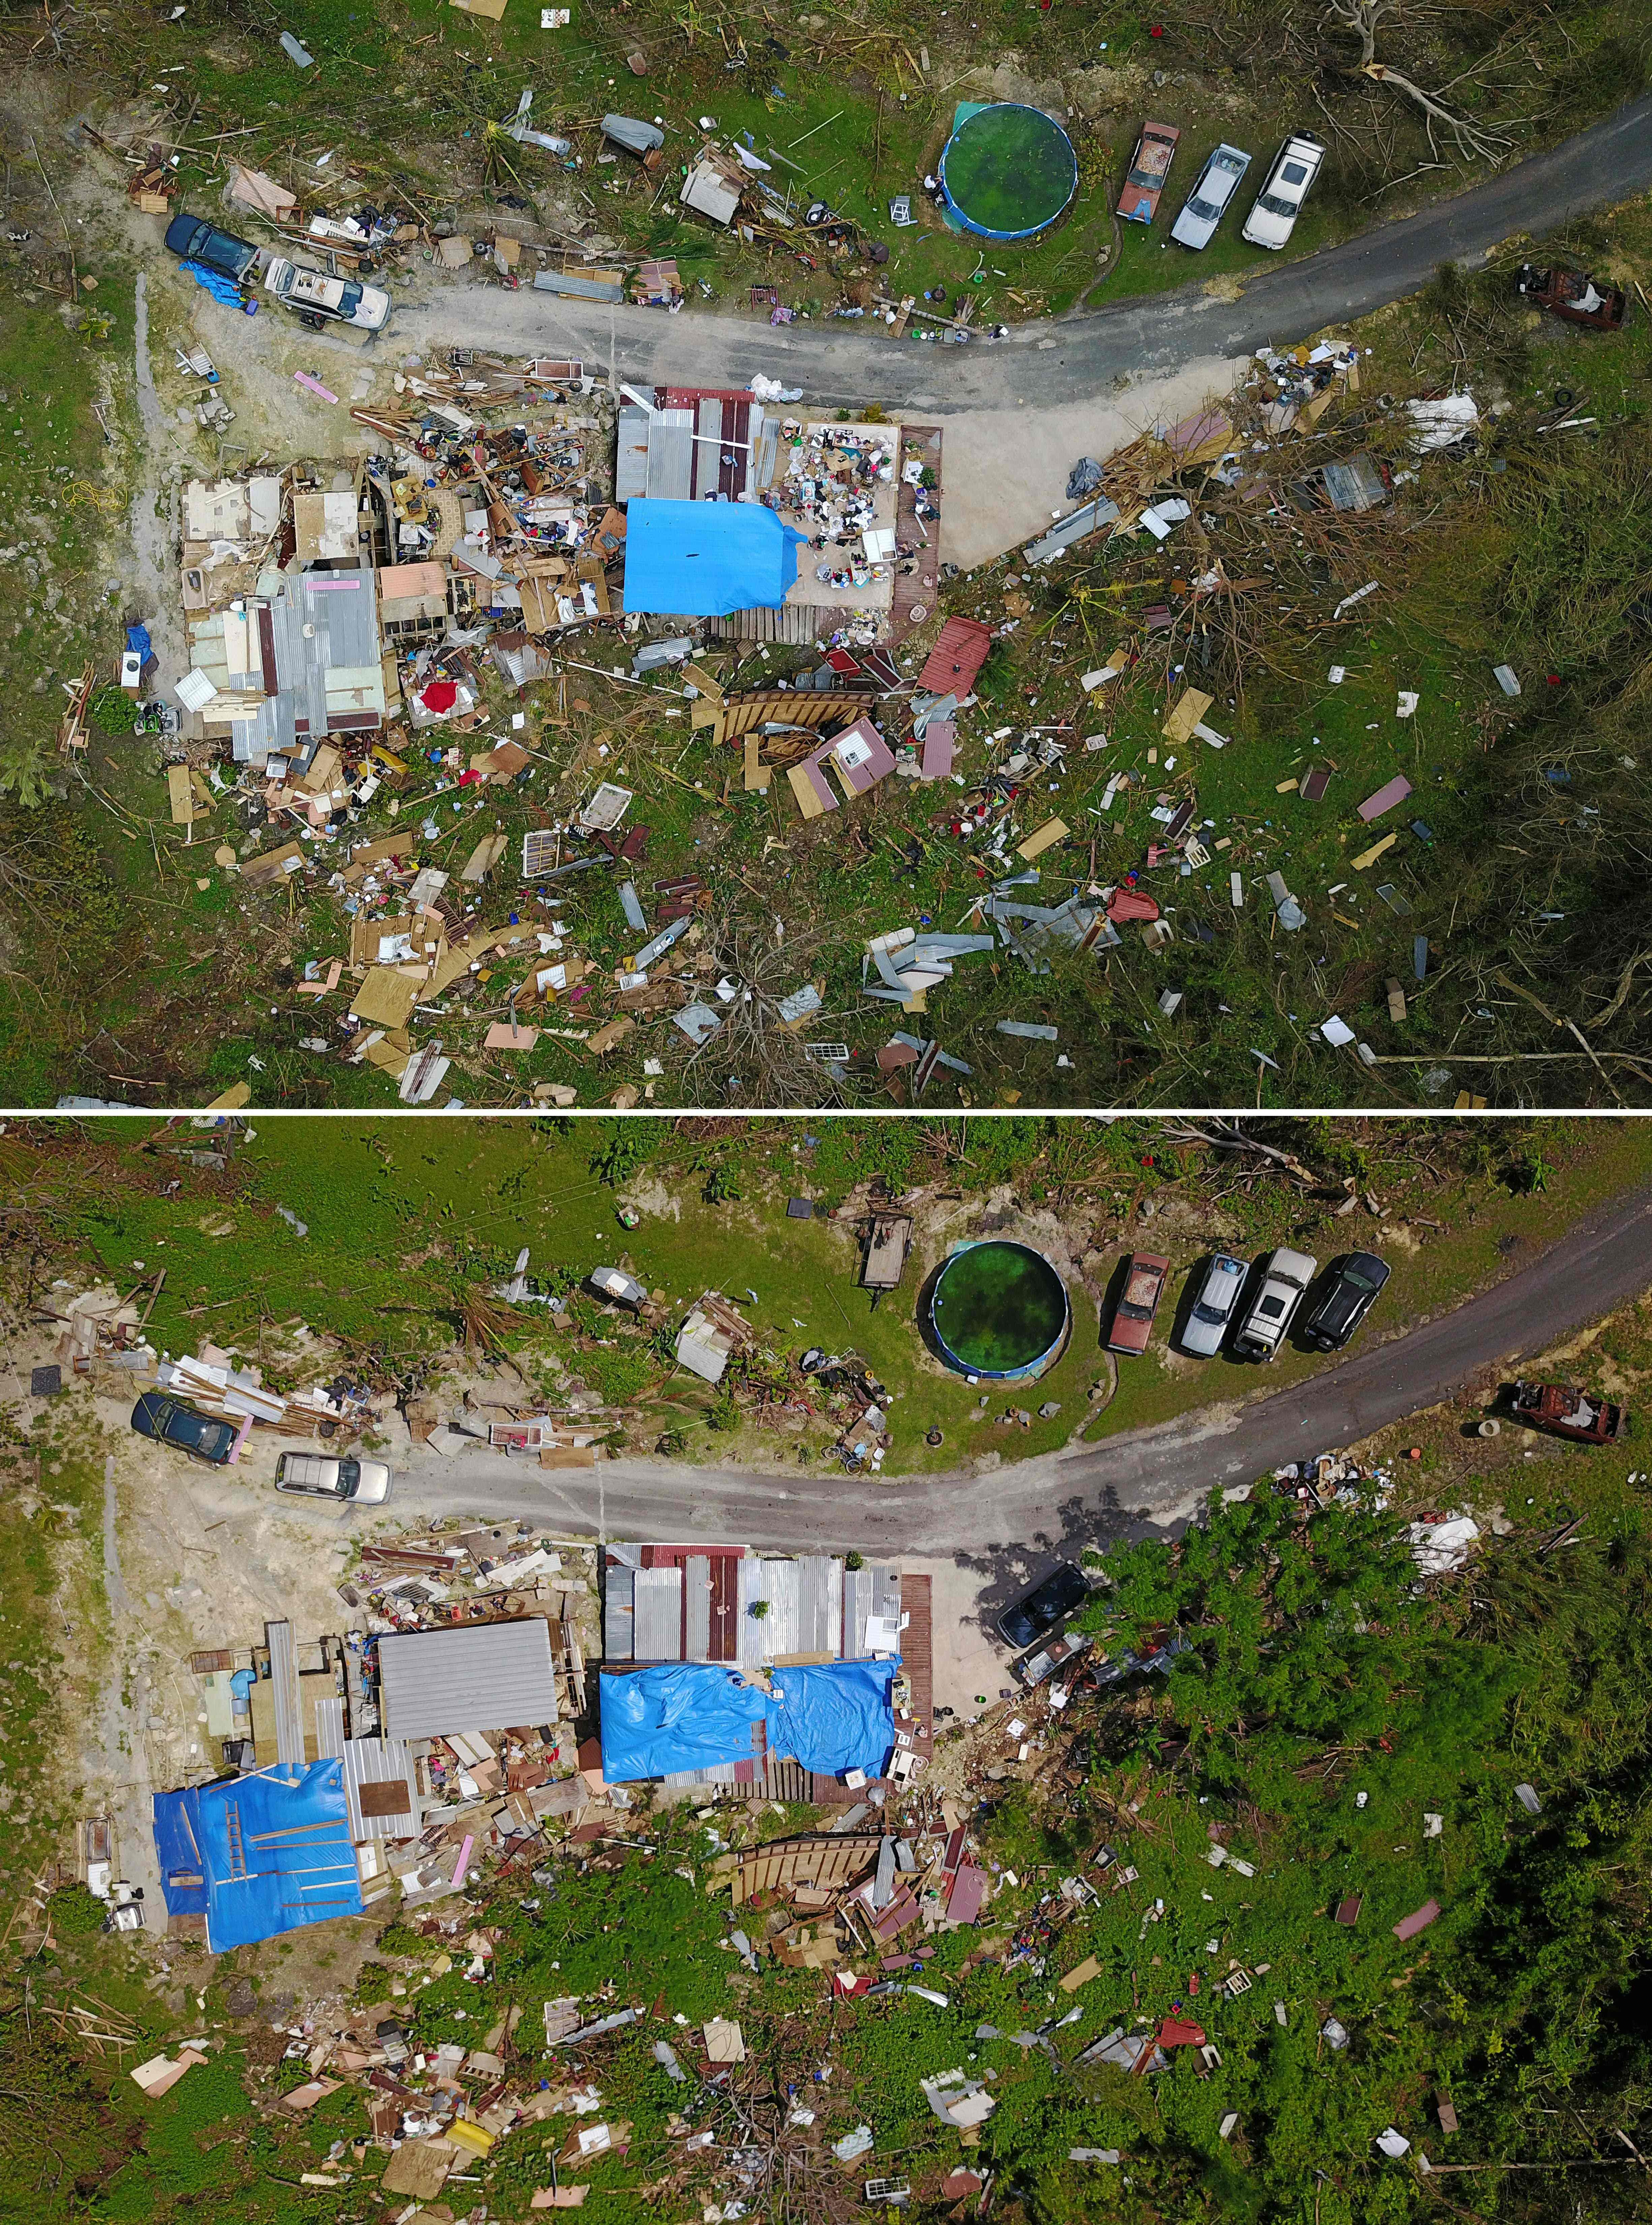 مشهد رأسى لدمار المنازل فى بورتريكو بعد إعصار ماريا